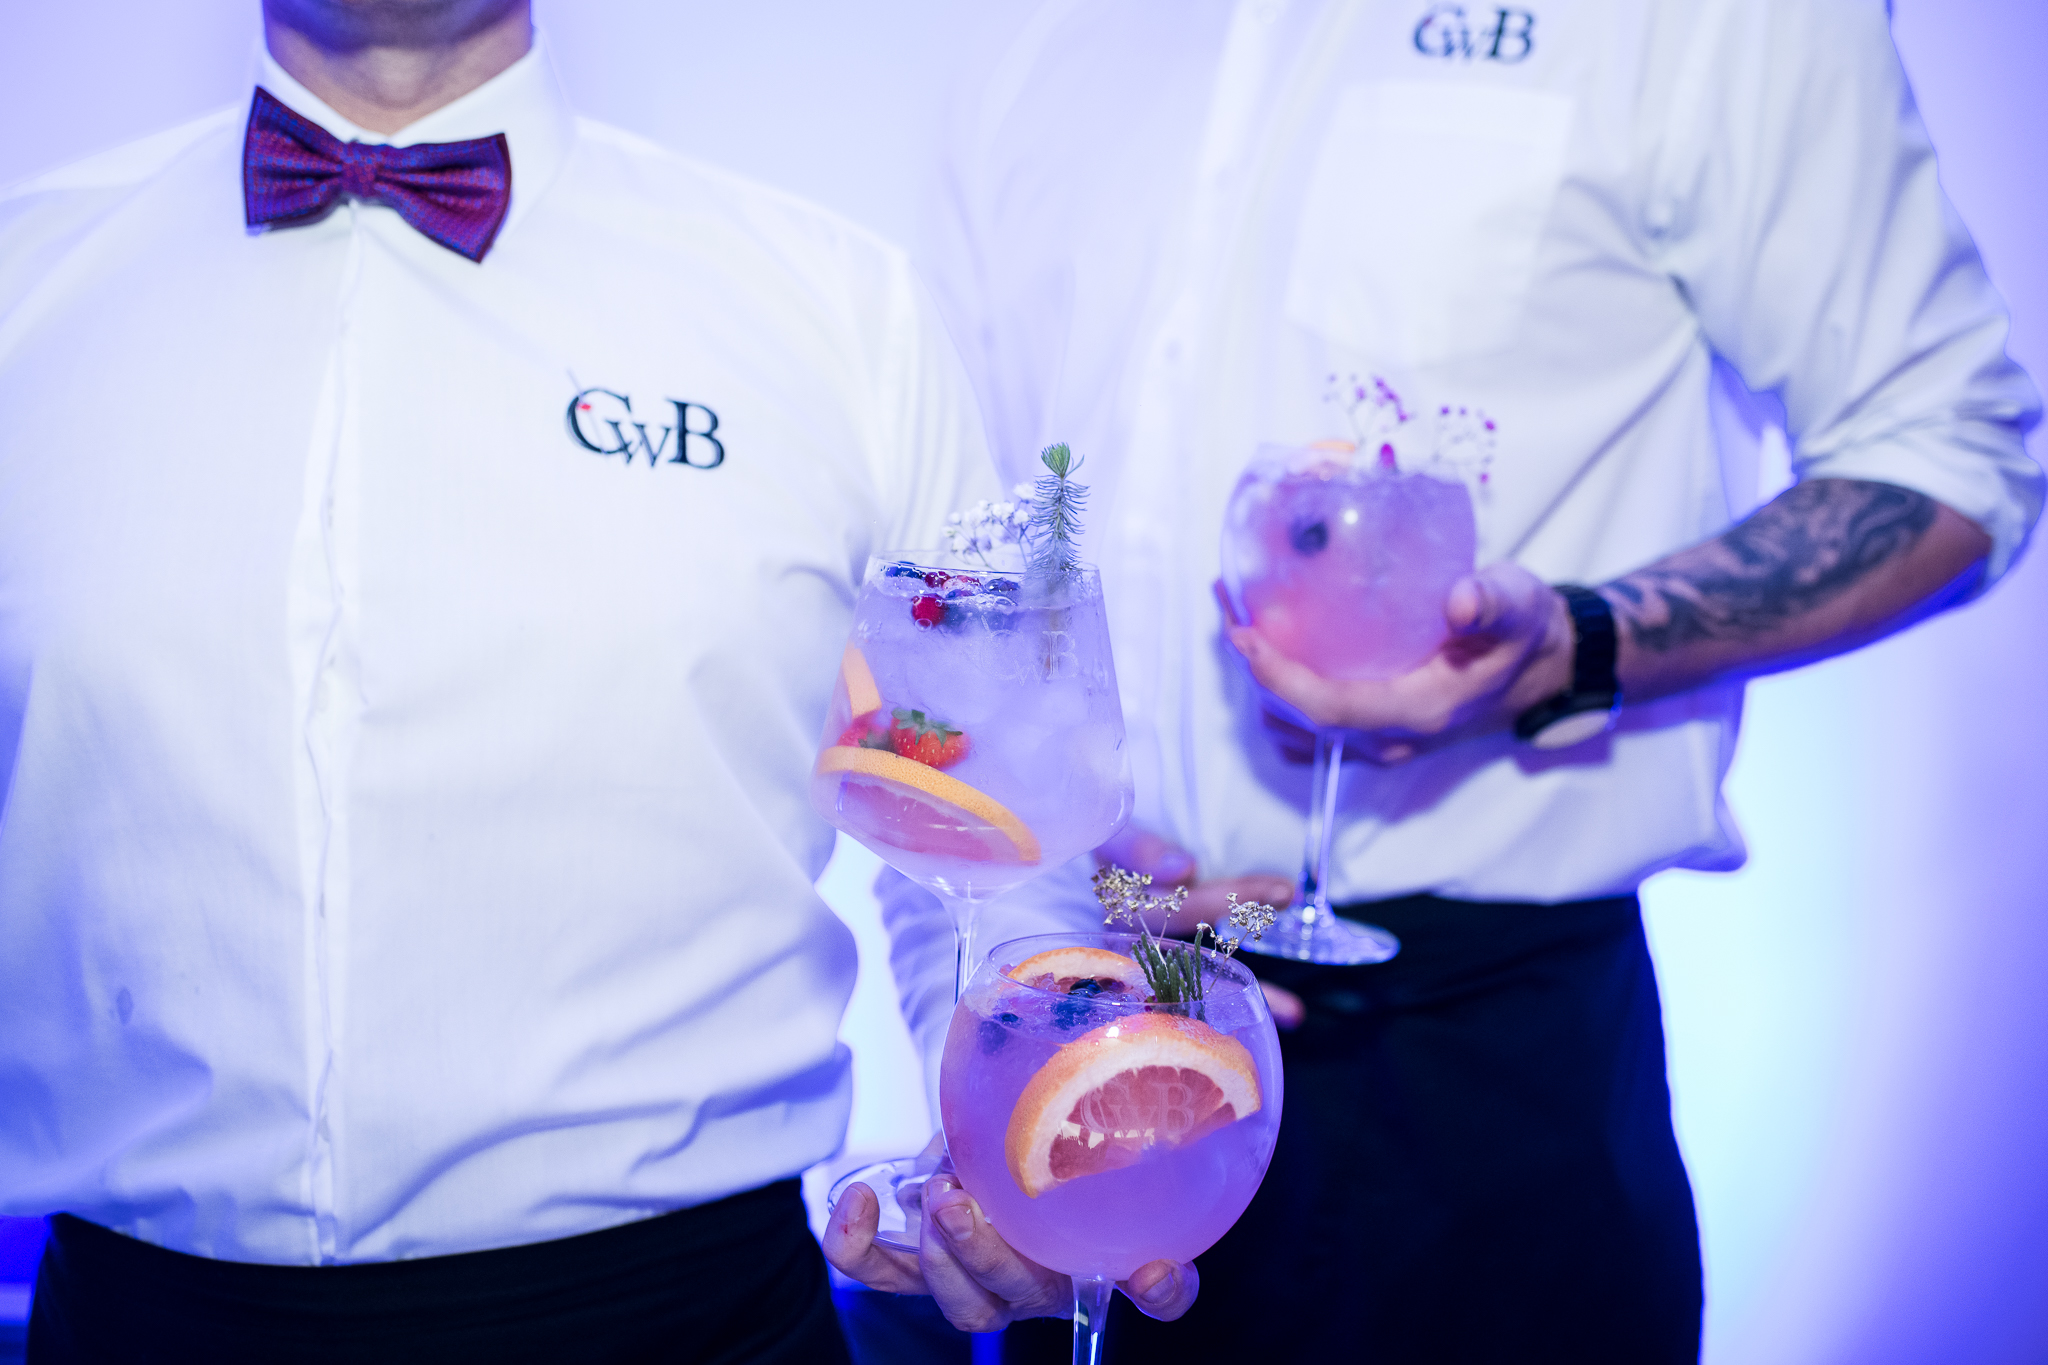 CwB taurės su graviravimu – ypatingiems kokteiliams